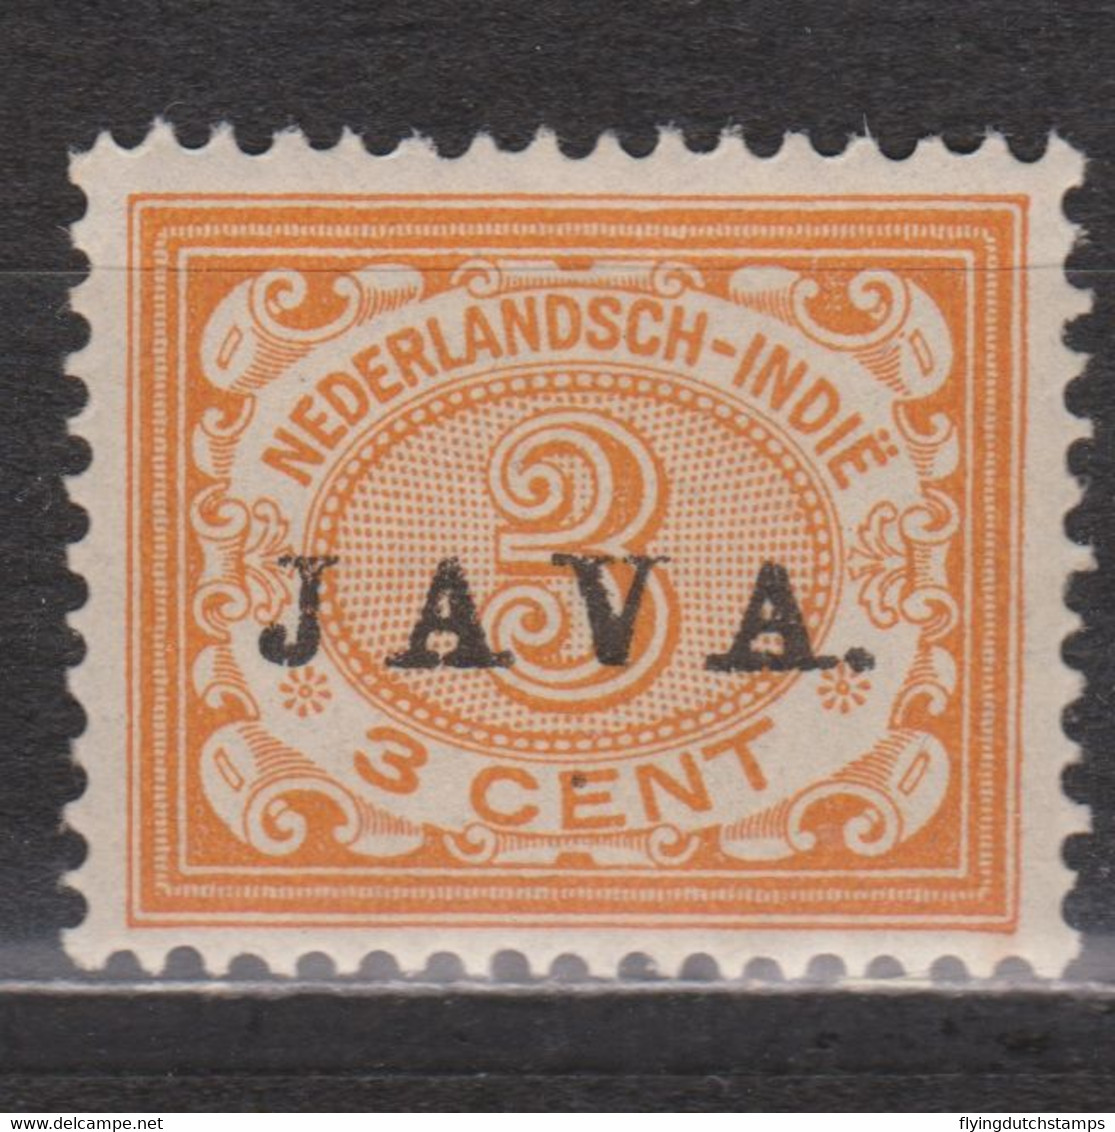 Nr 67 MLH JAVA 1908 ; NETHERLANDS INDIES PER PIECE NEDERLANDS INDIE PER STUK - Niederländisch-Indien